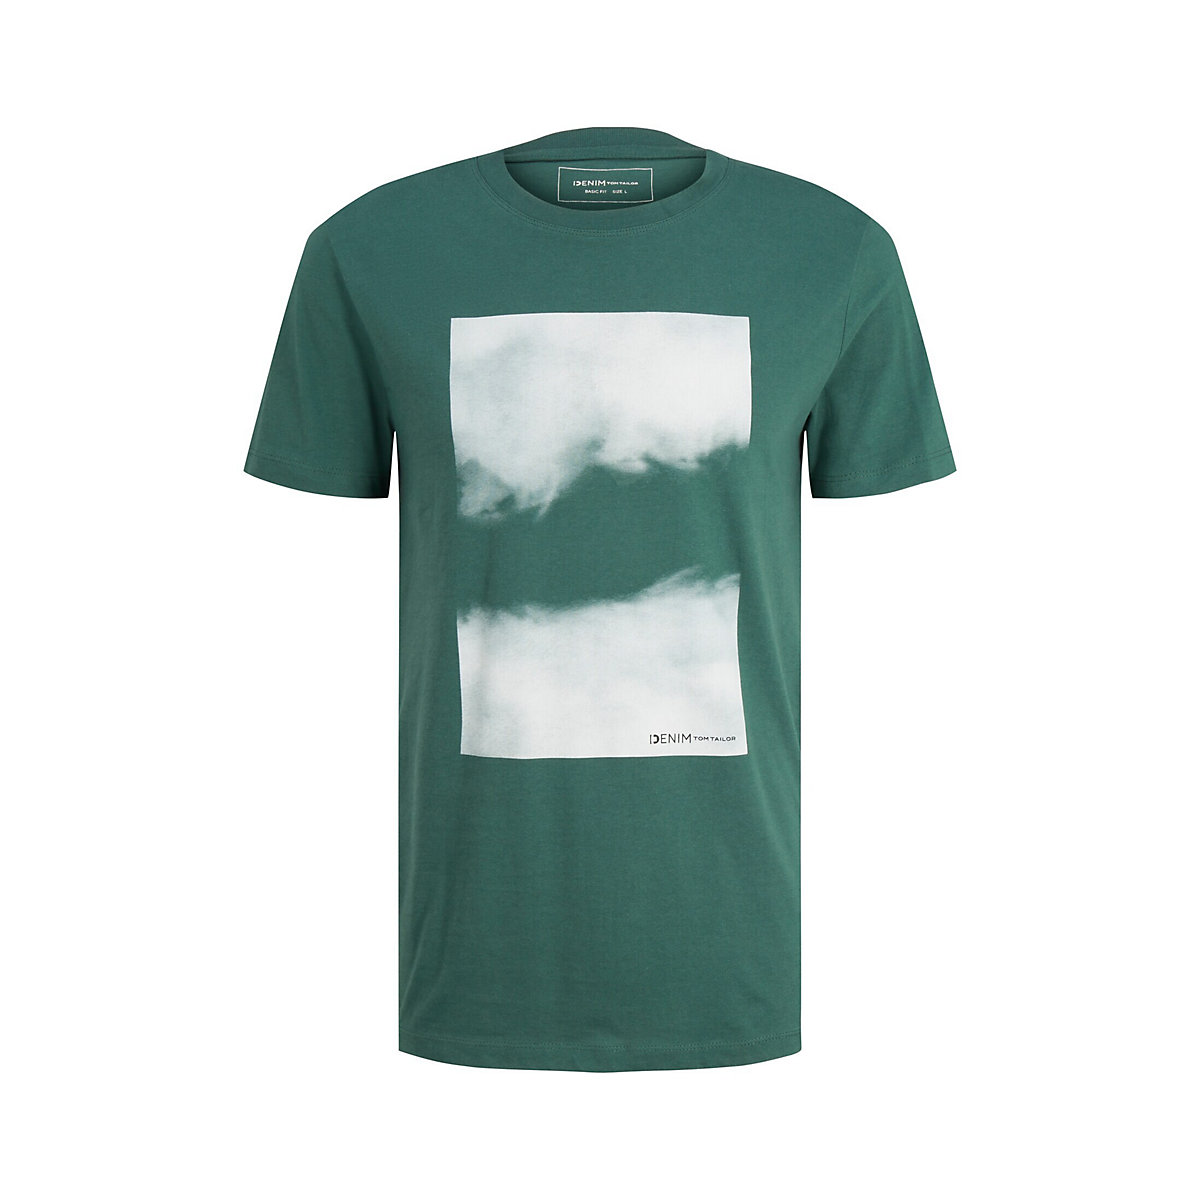 TOM TAILOR Denim T-Shirt T-Shirt mit Fotoprint  T-Shirts grün